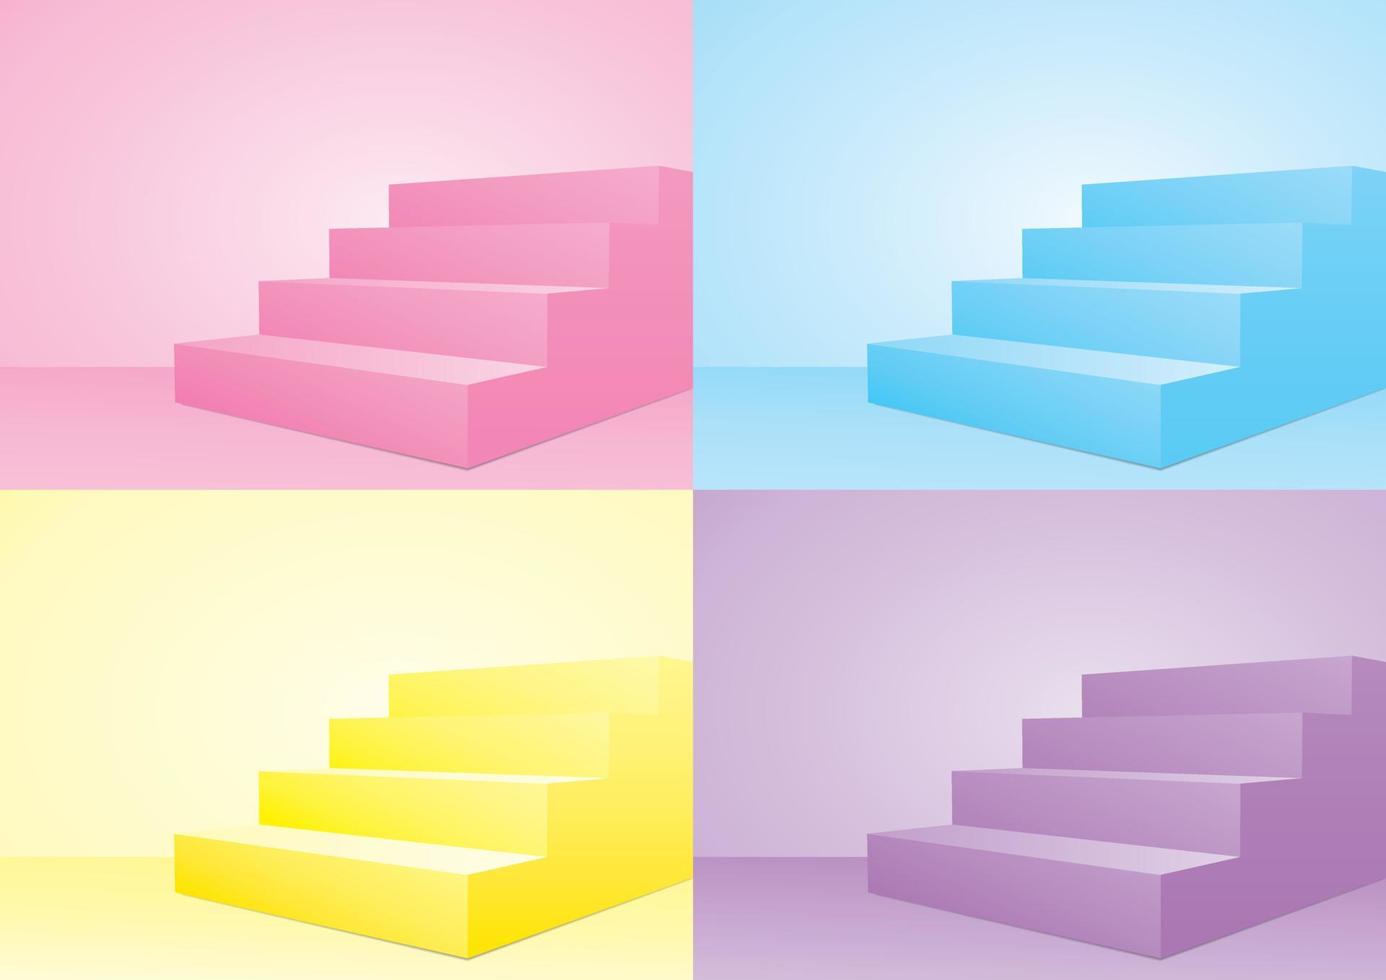 diseño simple pastel escaleras mostrar fondo conjunto 3d ilustración vector